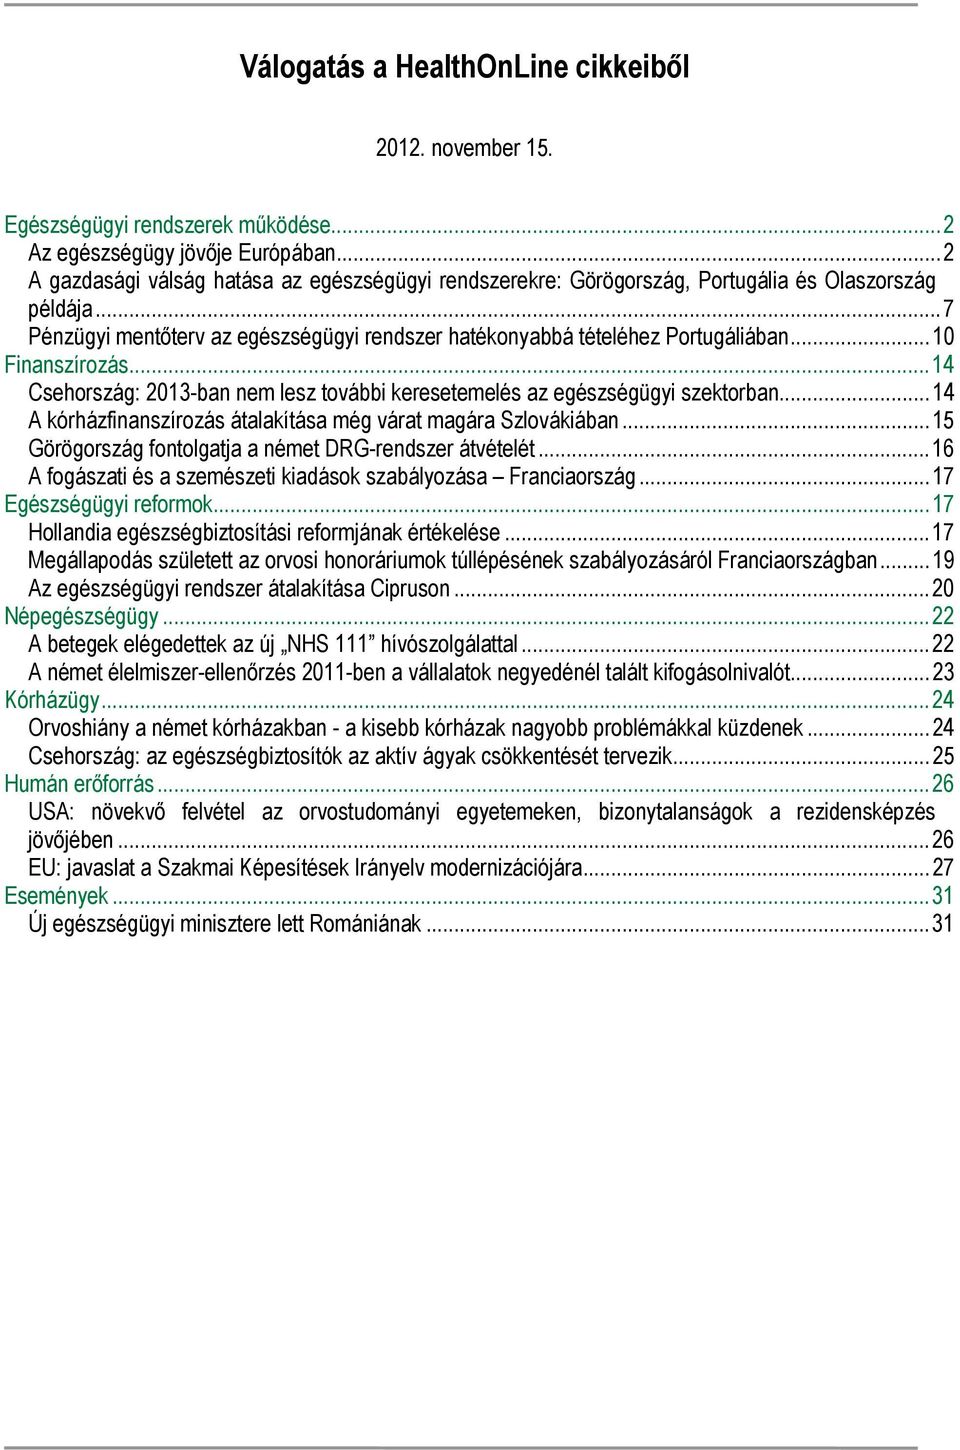 ..10 Finanszírozás...14 Csehország: 2013-ban nem lesz további keresetemelés az egészségügyi szektorban...14 A kórházfinanszírozás átalakítása még várat magára Szlovákiában.